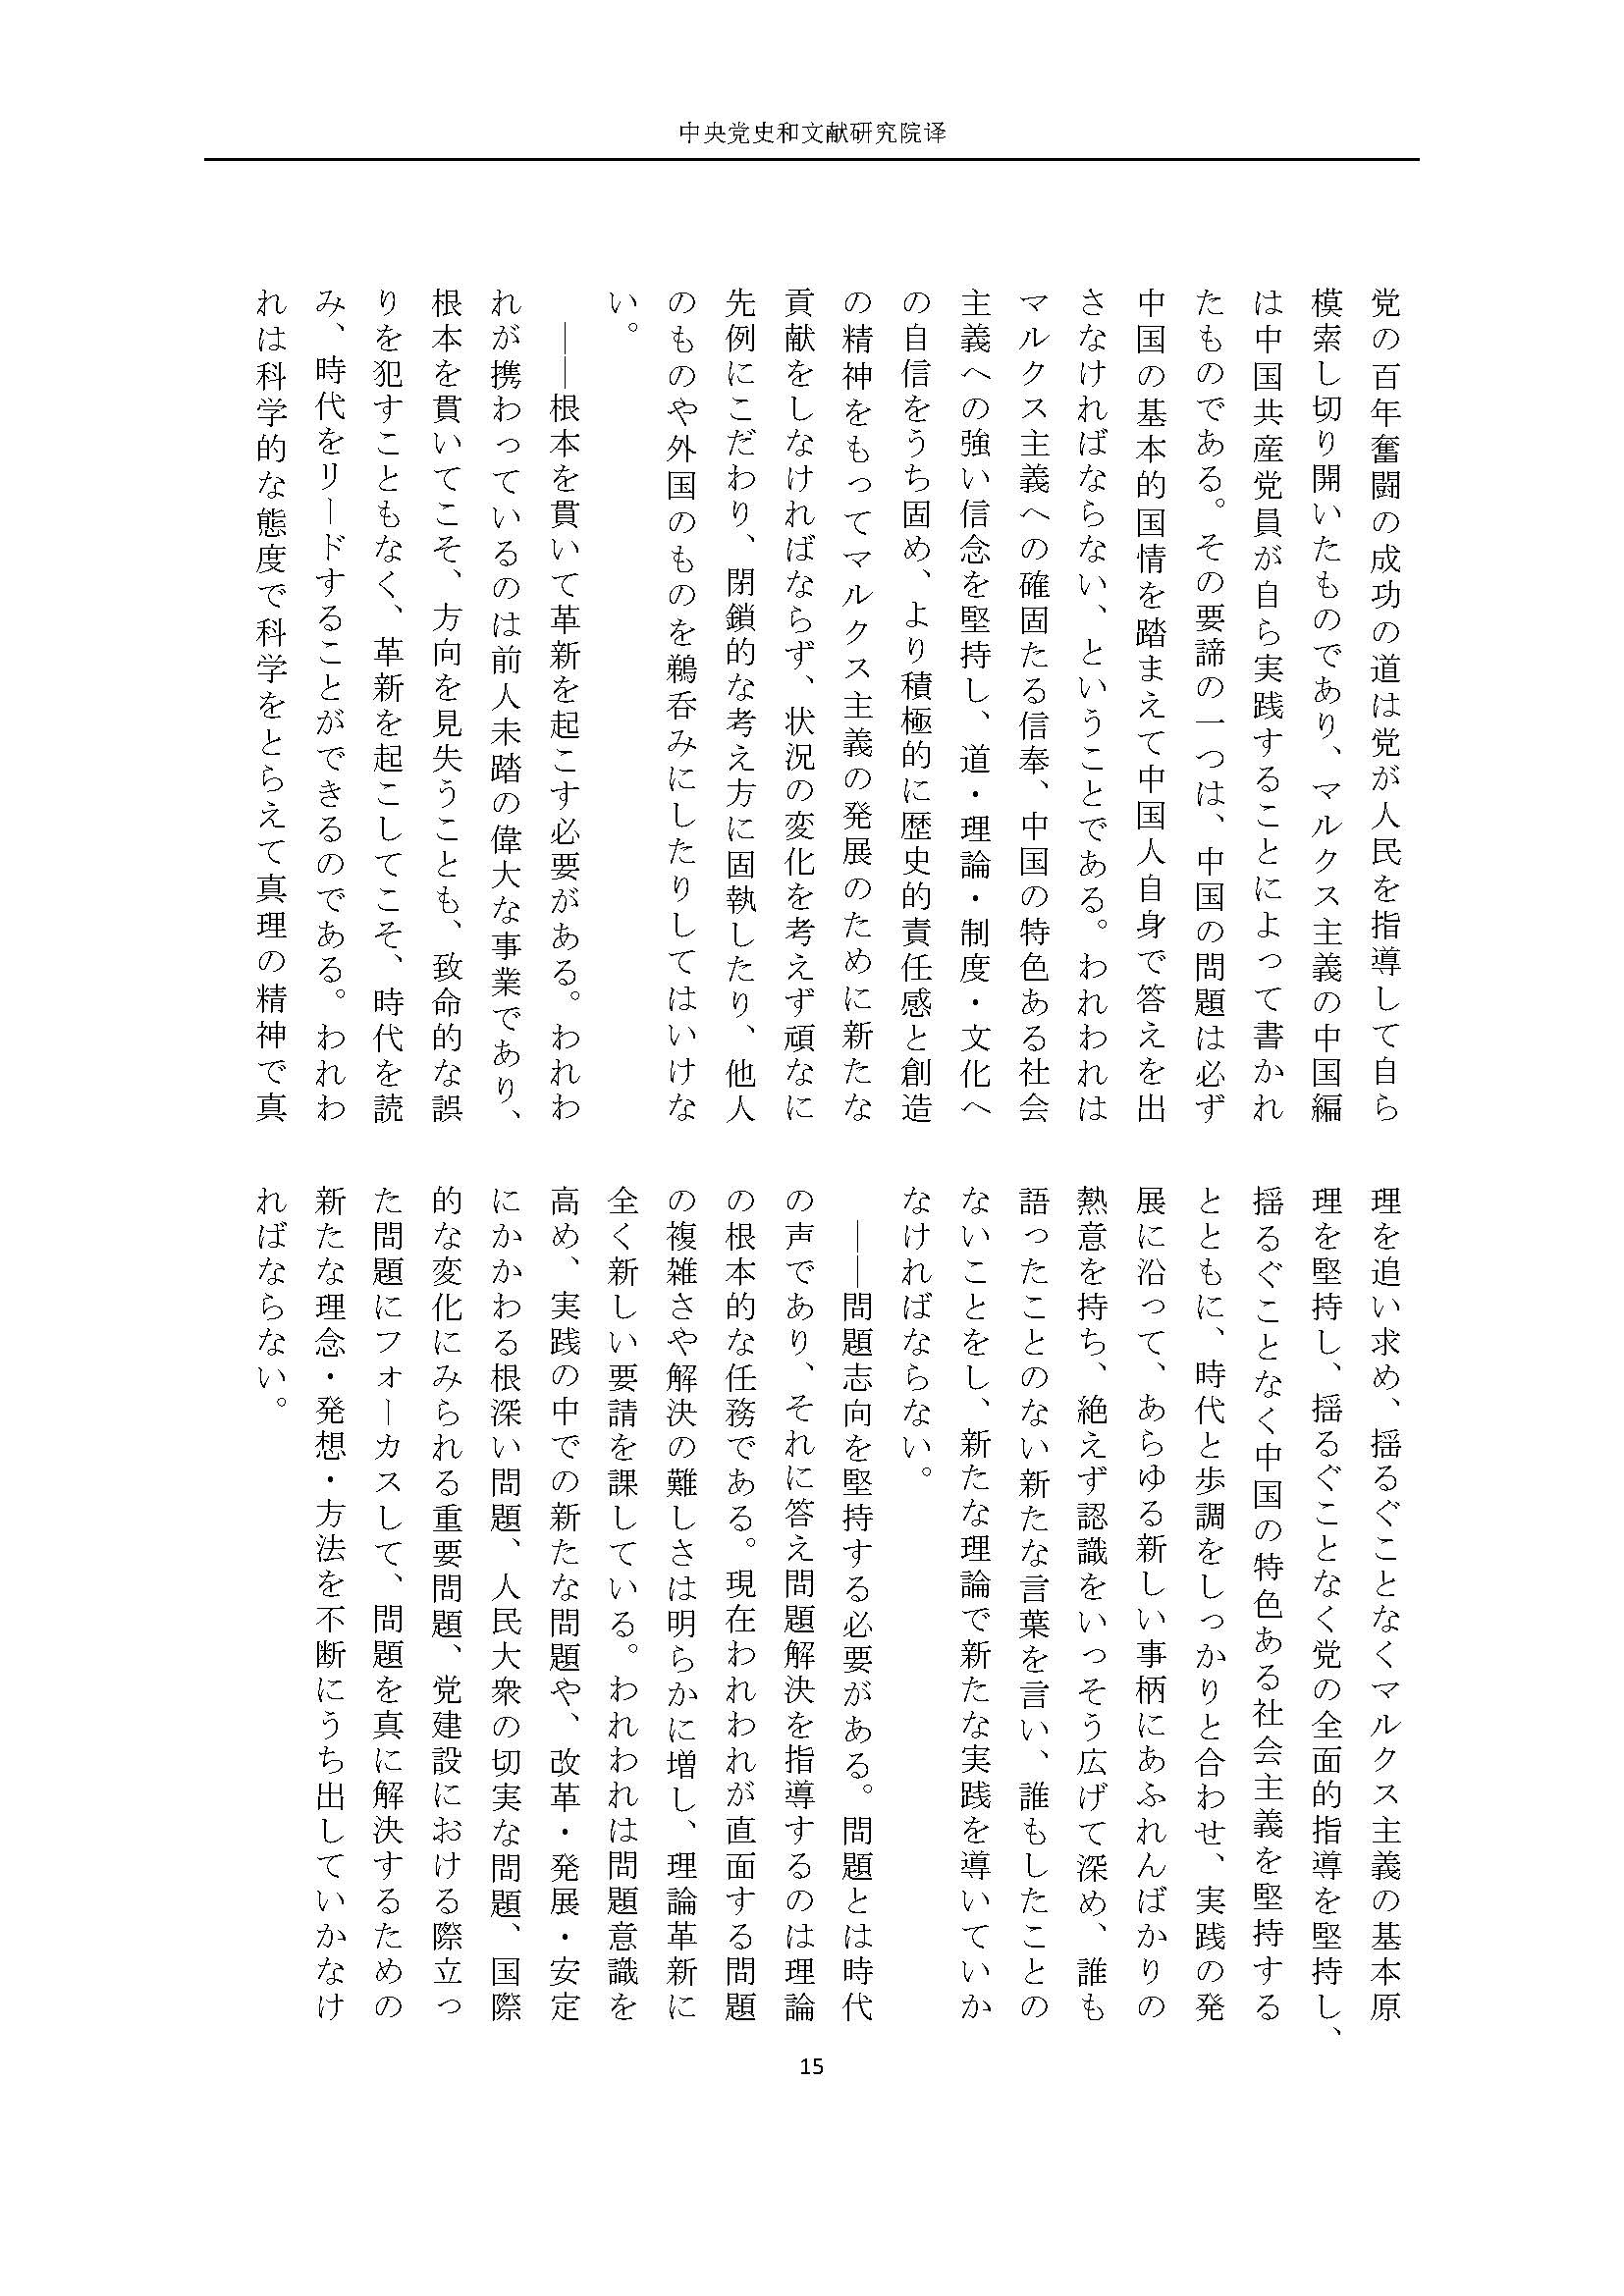 二十大报告（日文全文）_页面_16